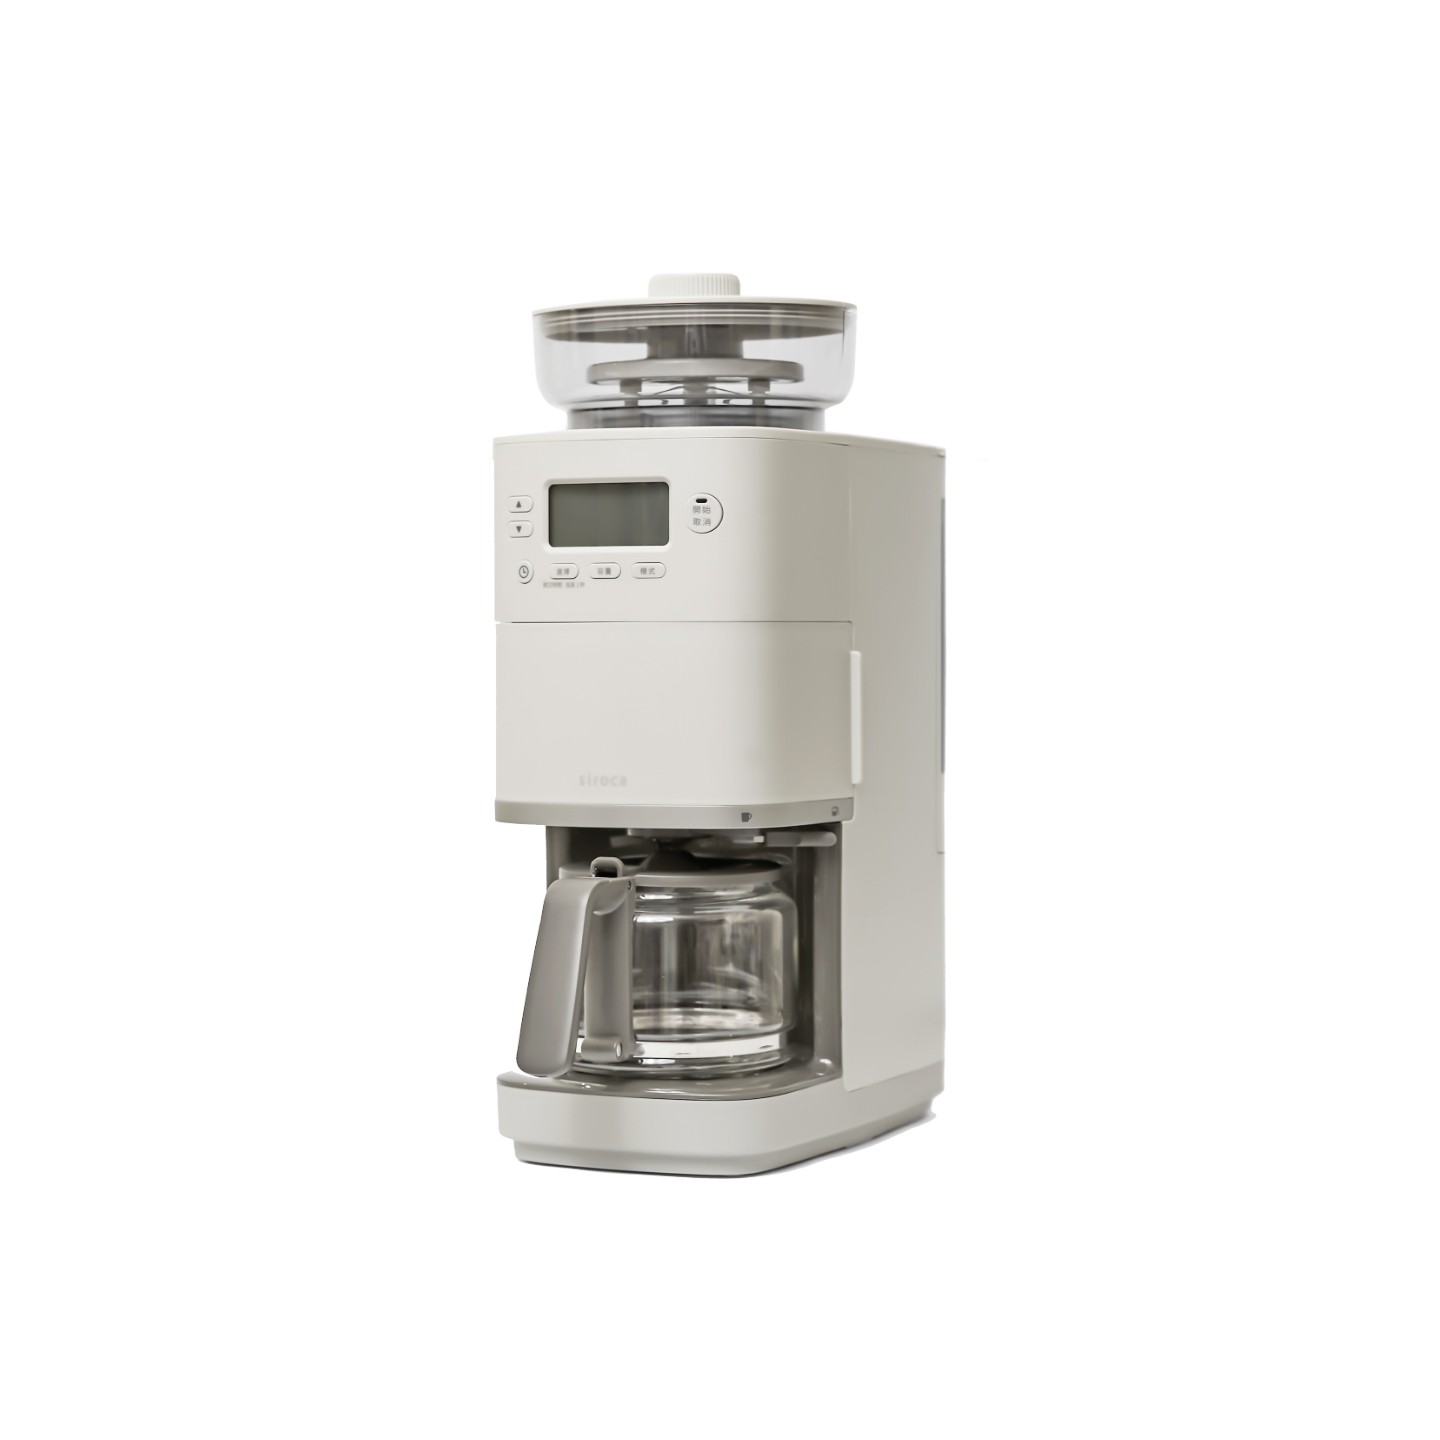 【新品上市】SC-C2510 全自動石臼式研磨咖啡機 淺灰色